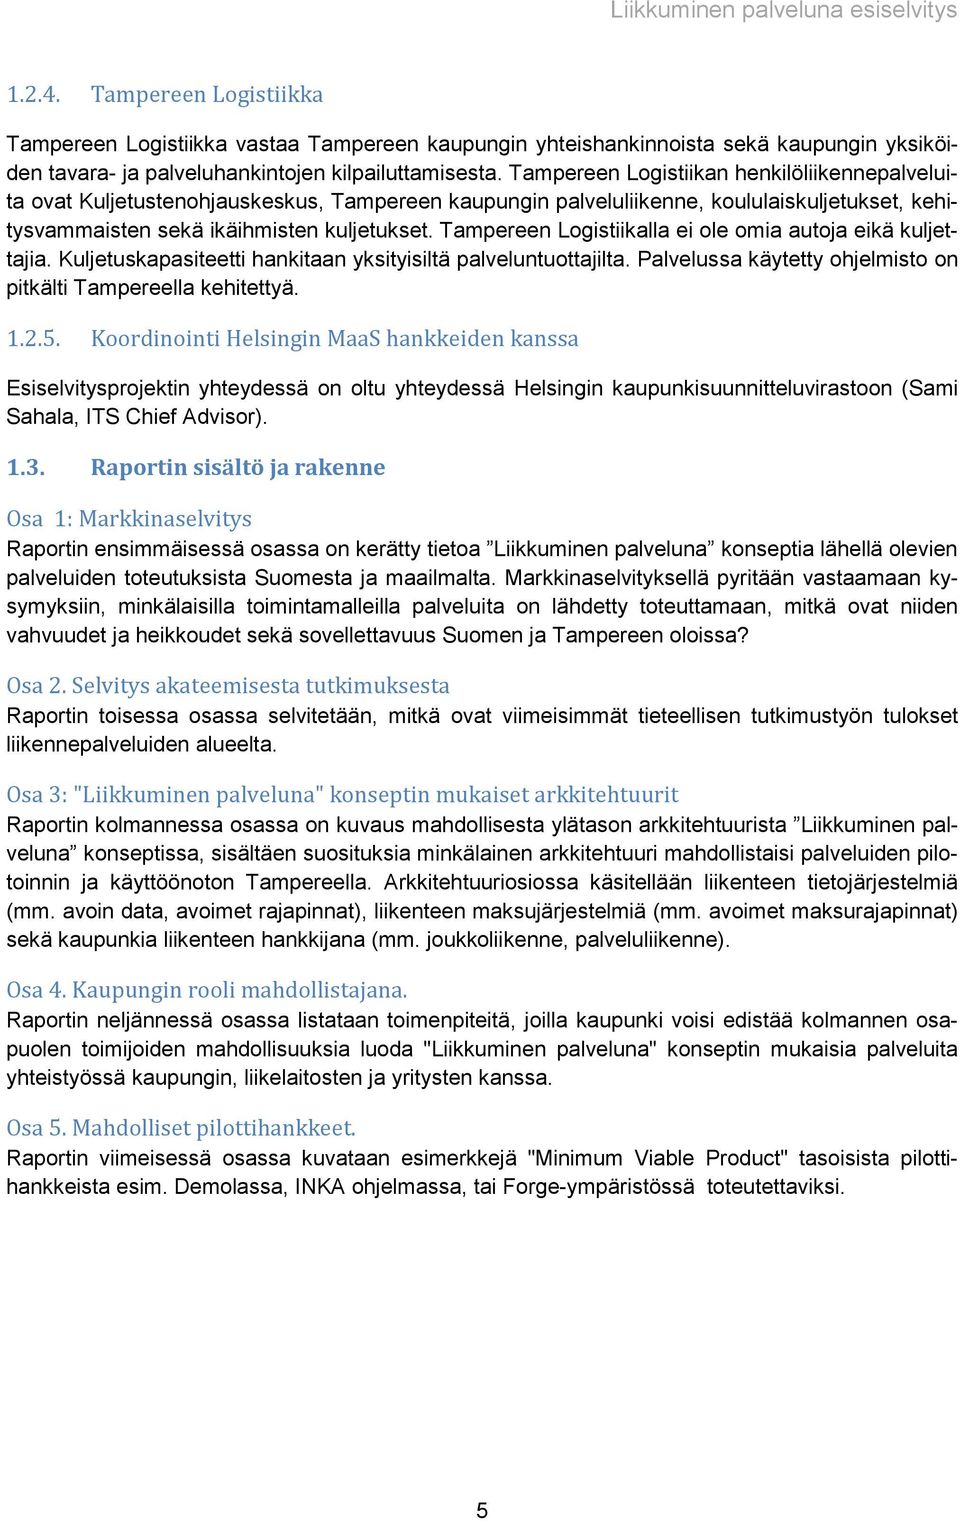 Tampereen Logistiikalla ei ole omia autoja eikä kuljettajia. Kuljetuskapasiteetti hankitaan yksityisiltä palveluntuottajilta. Palvelussa käytetty ohjelmisto on pitkälti Tampereella kehitettyä. 1.2.5.